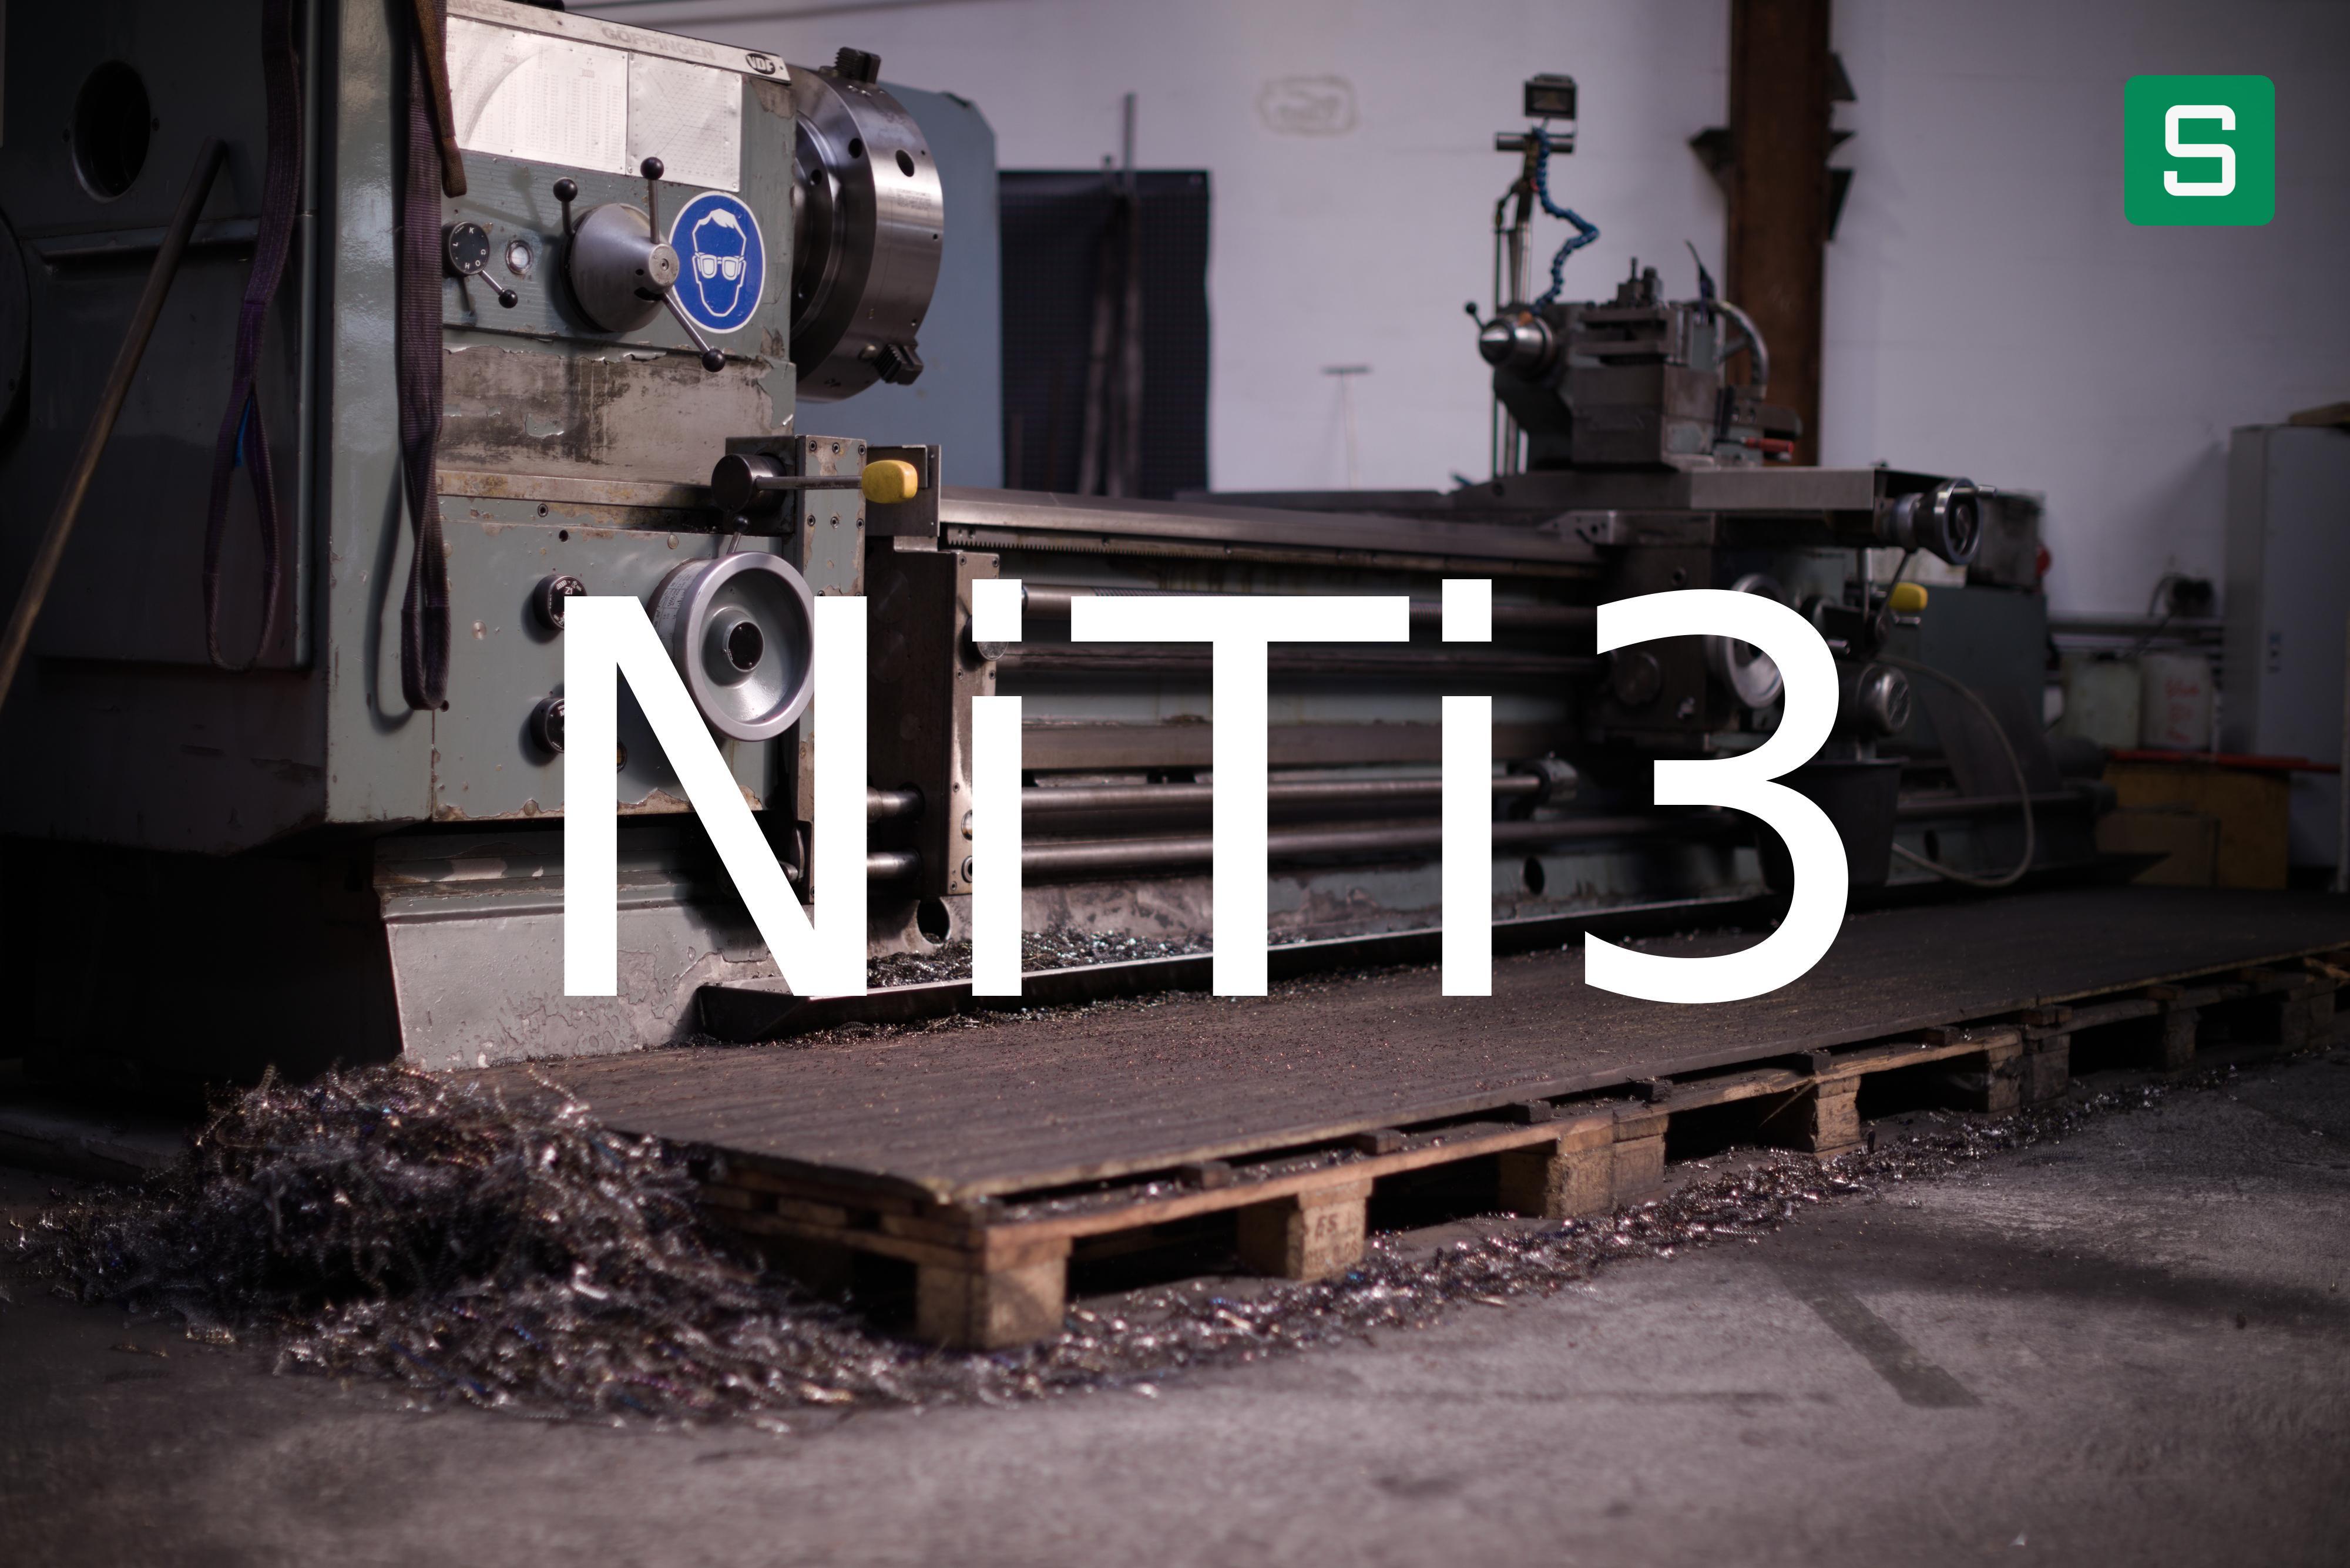 Steel Material: NiTi3